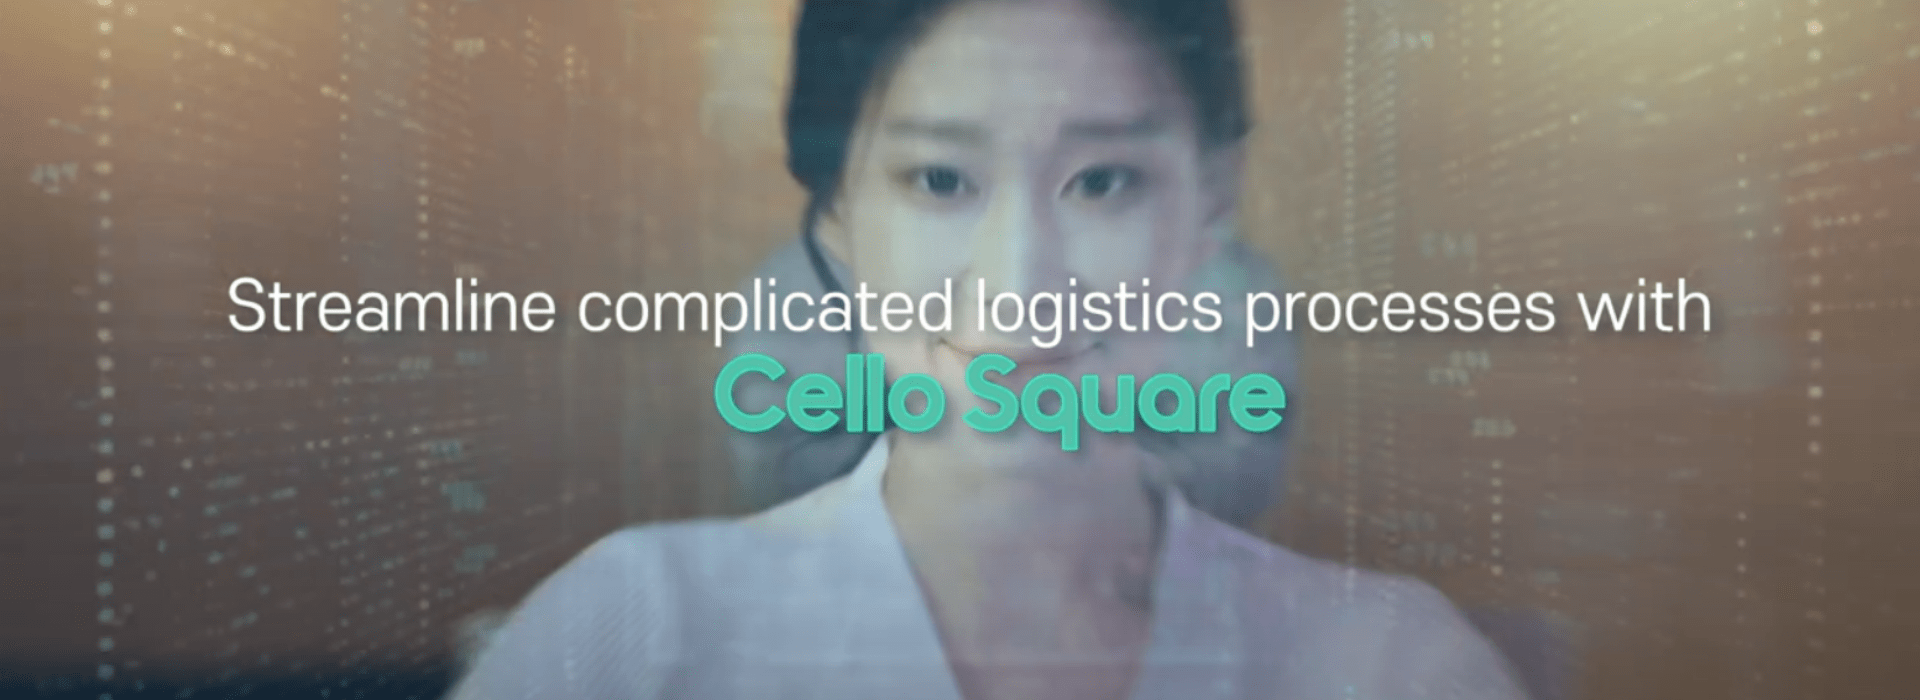 Cello Square Demo for Forwarding